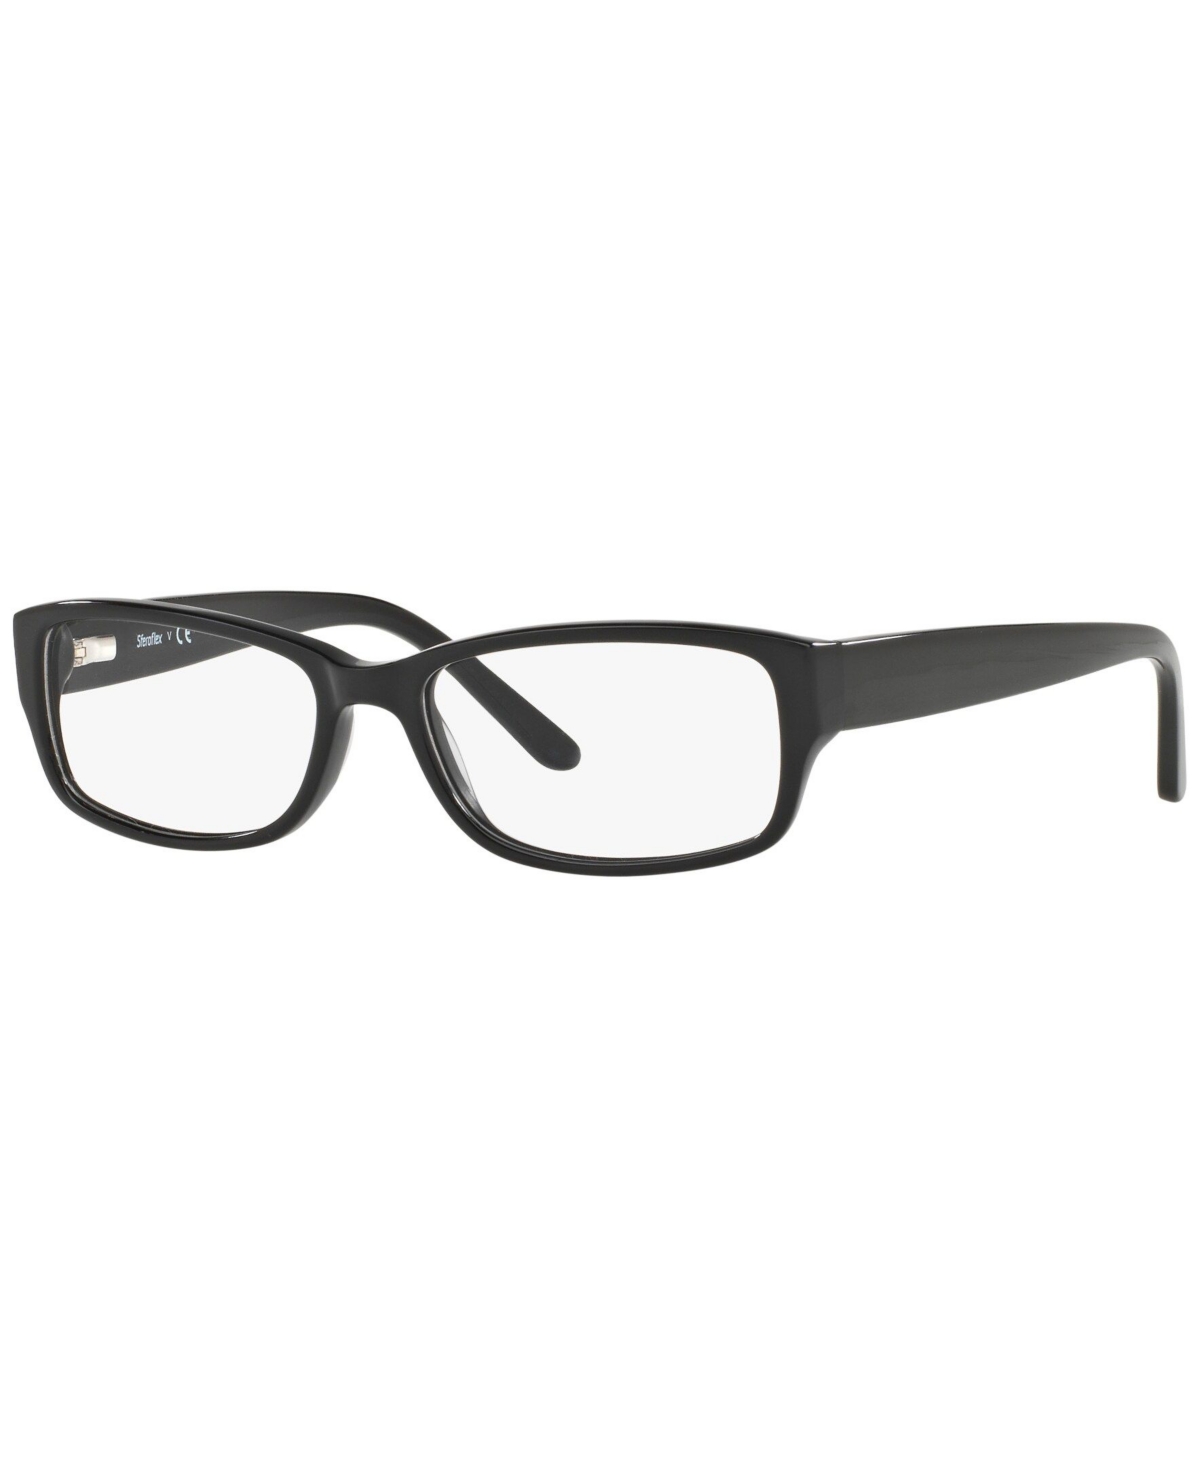 SF1561 Women's Rectangle Eyeglasses - Havana